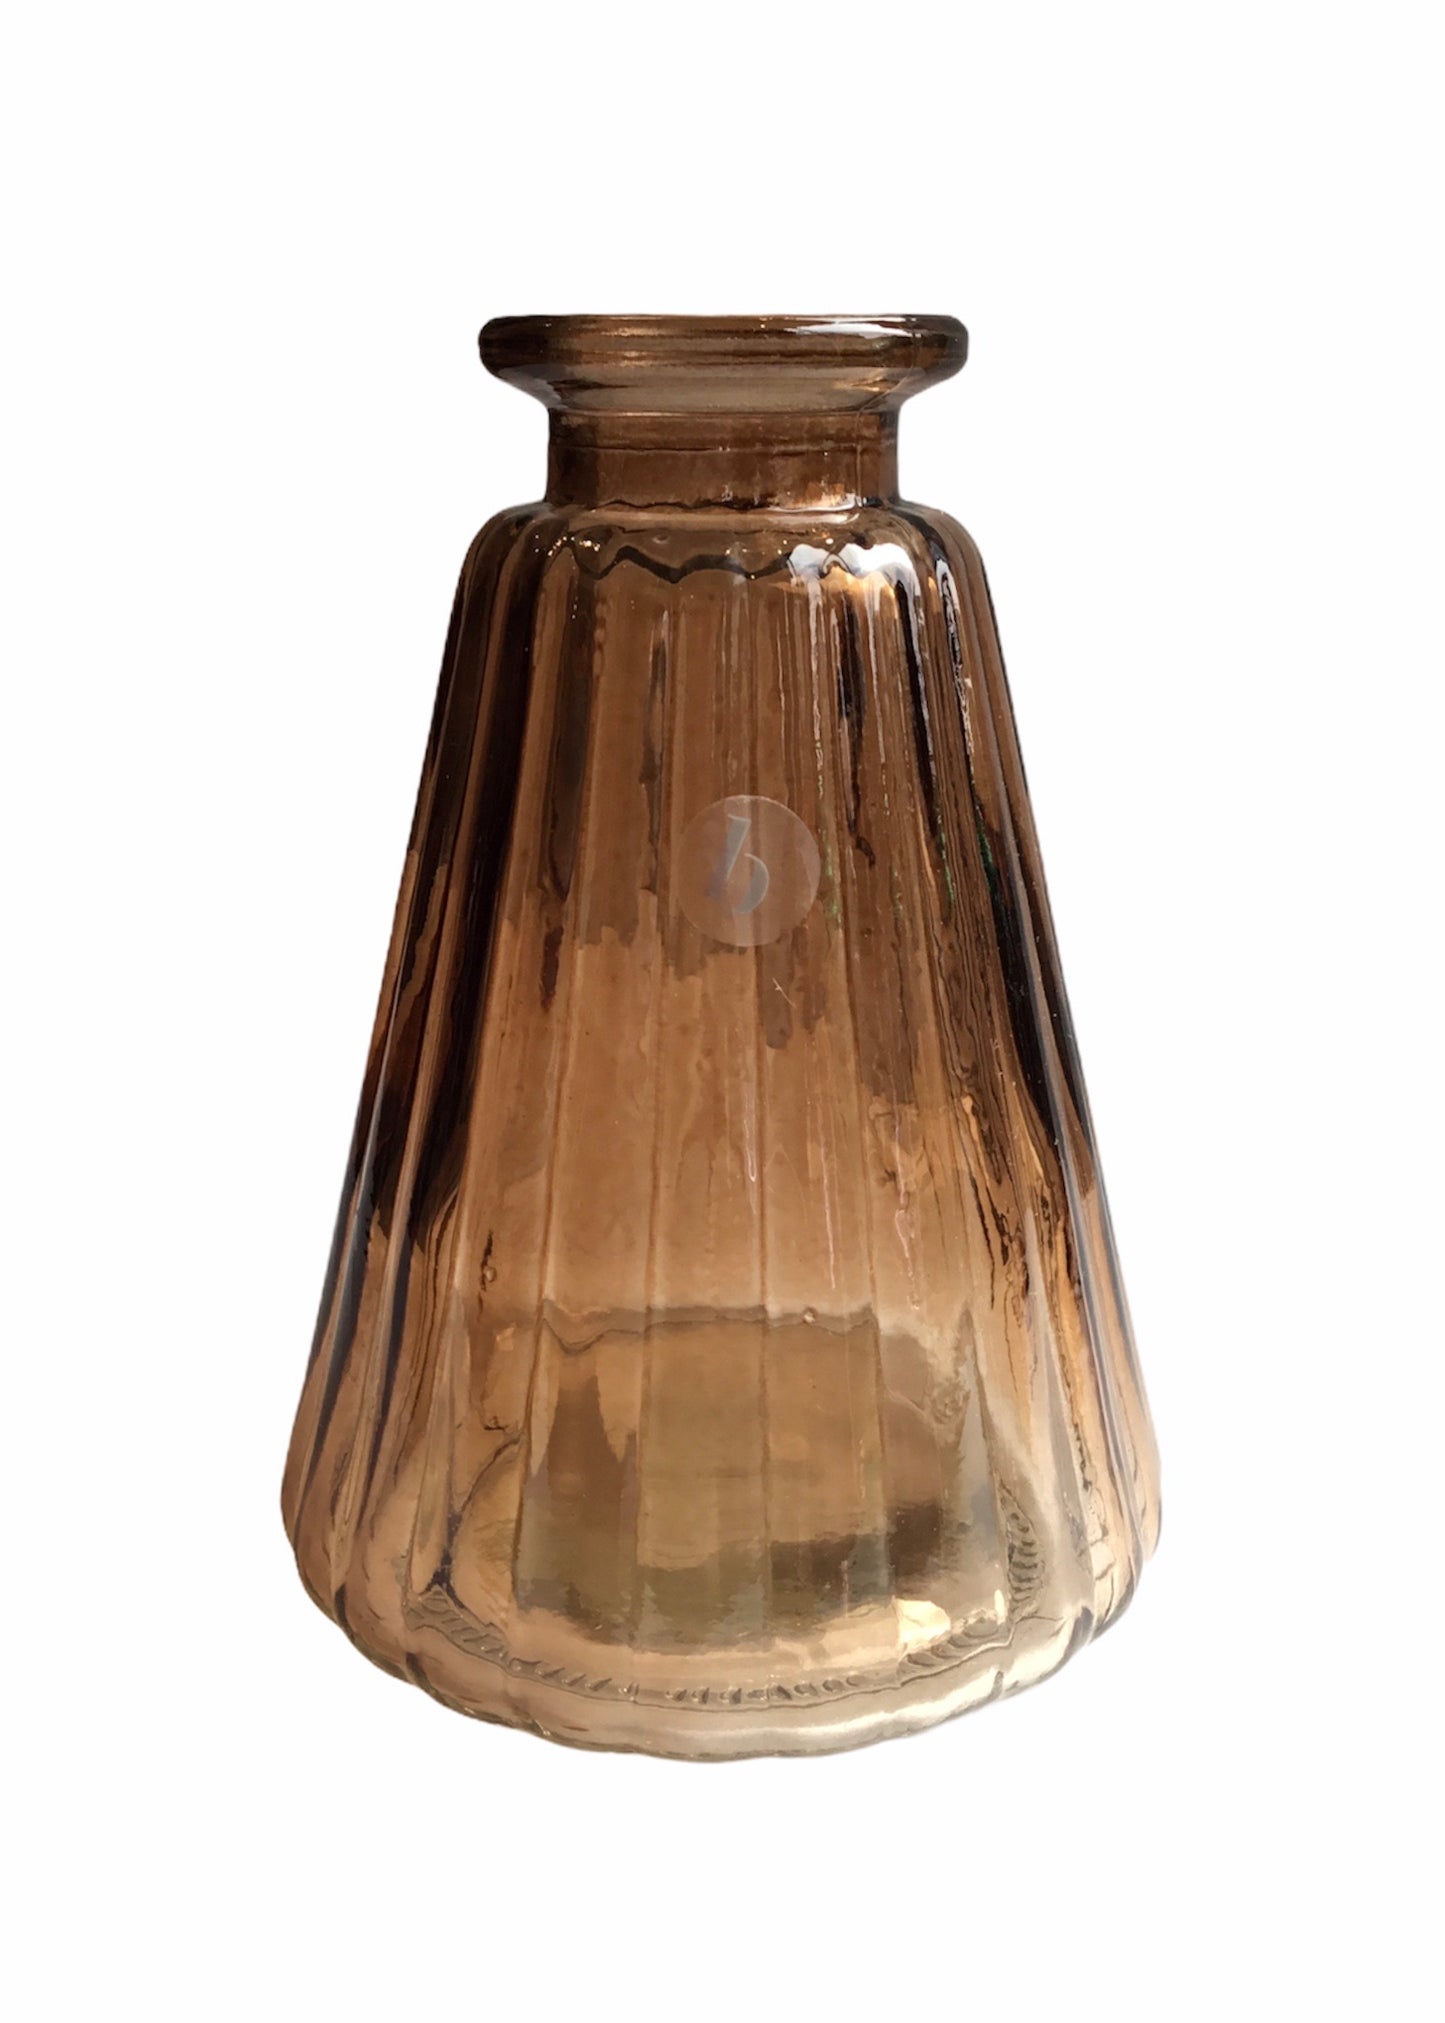 Broste - Agnar Glass Vases (3 Styles)*